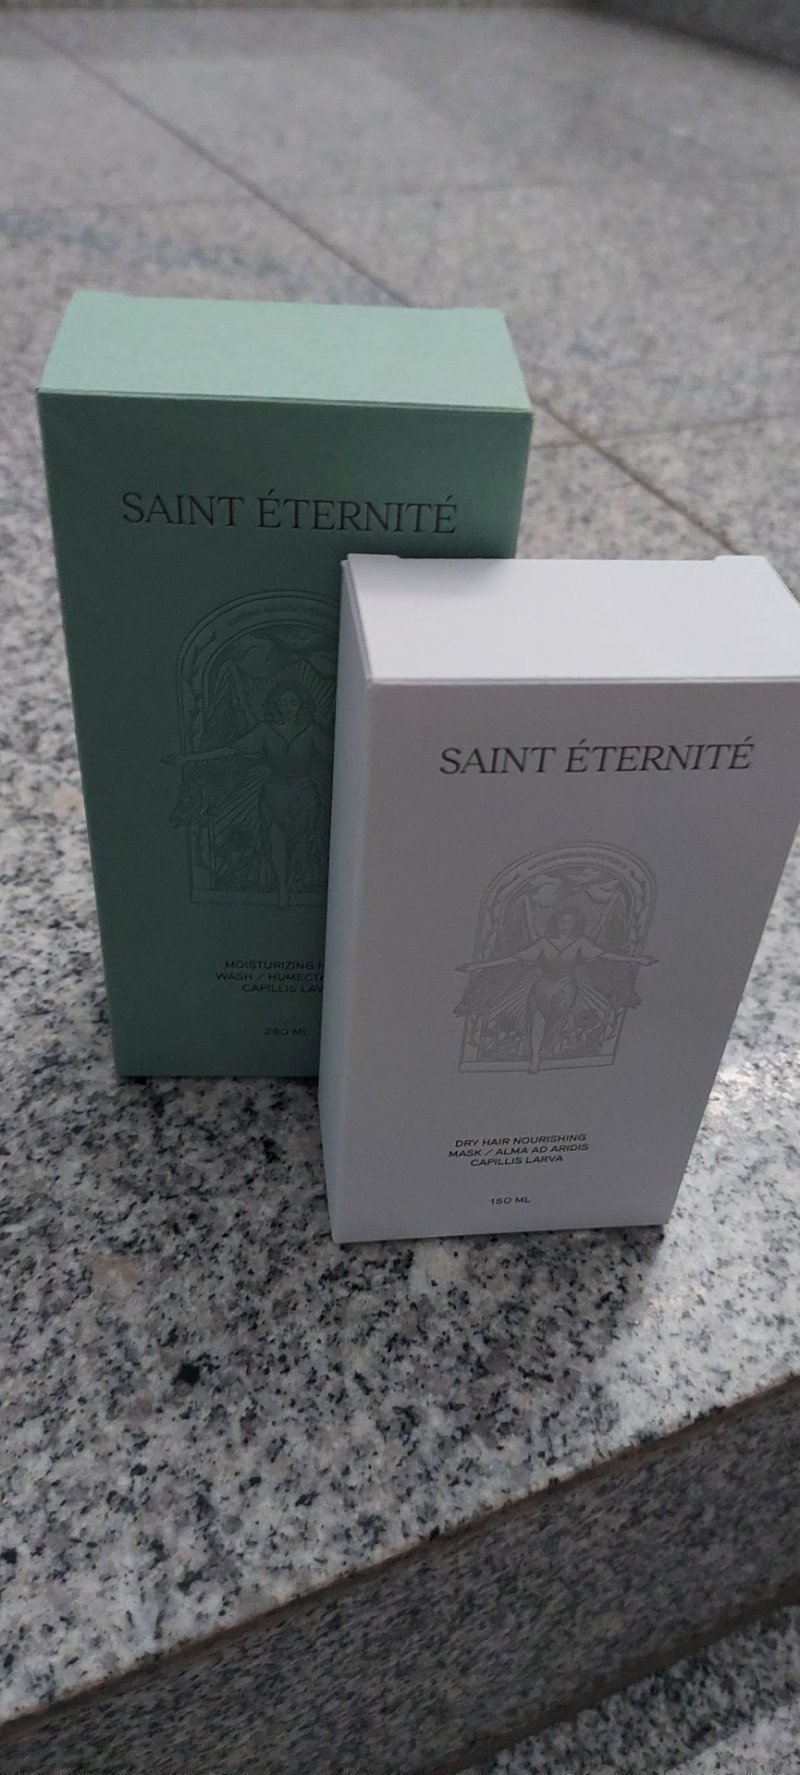 Saint Éternité, maska nawilżająca do włosów suchych i zniszczonych